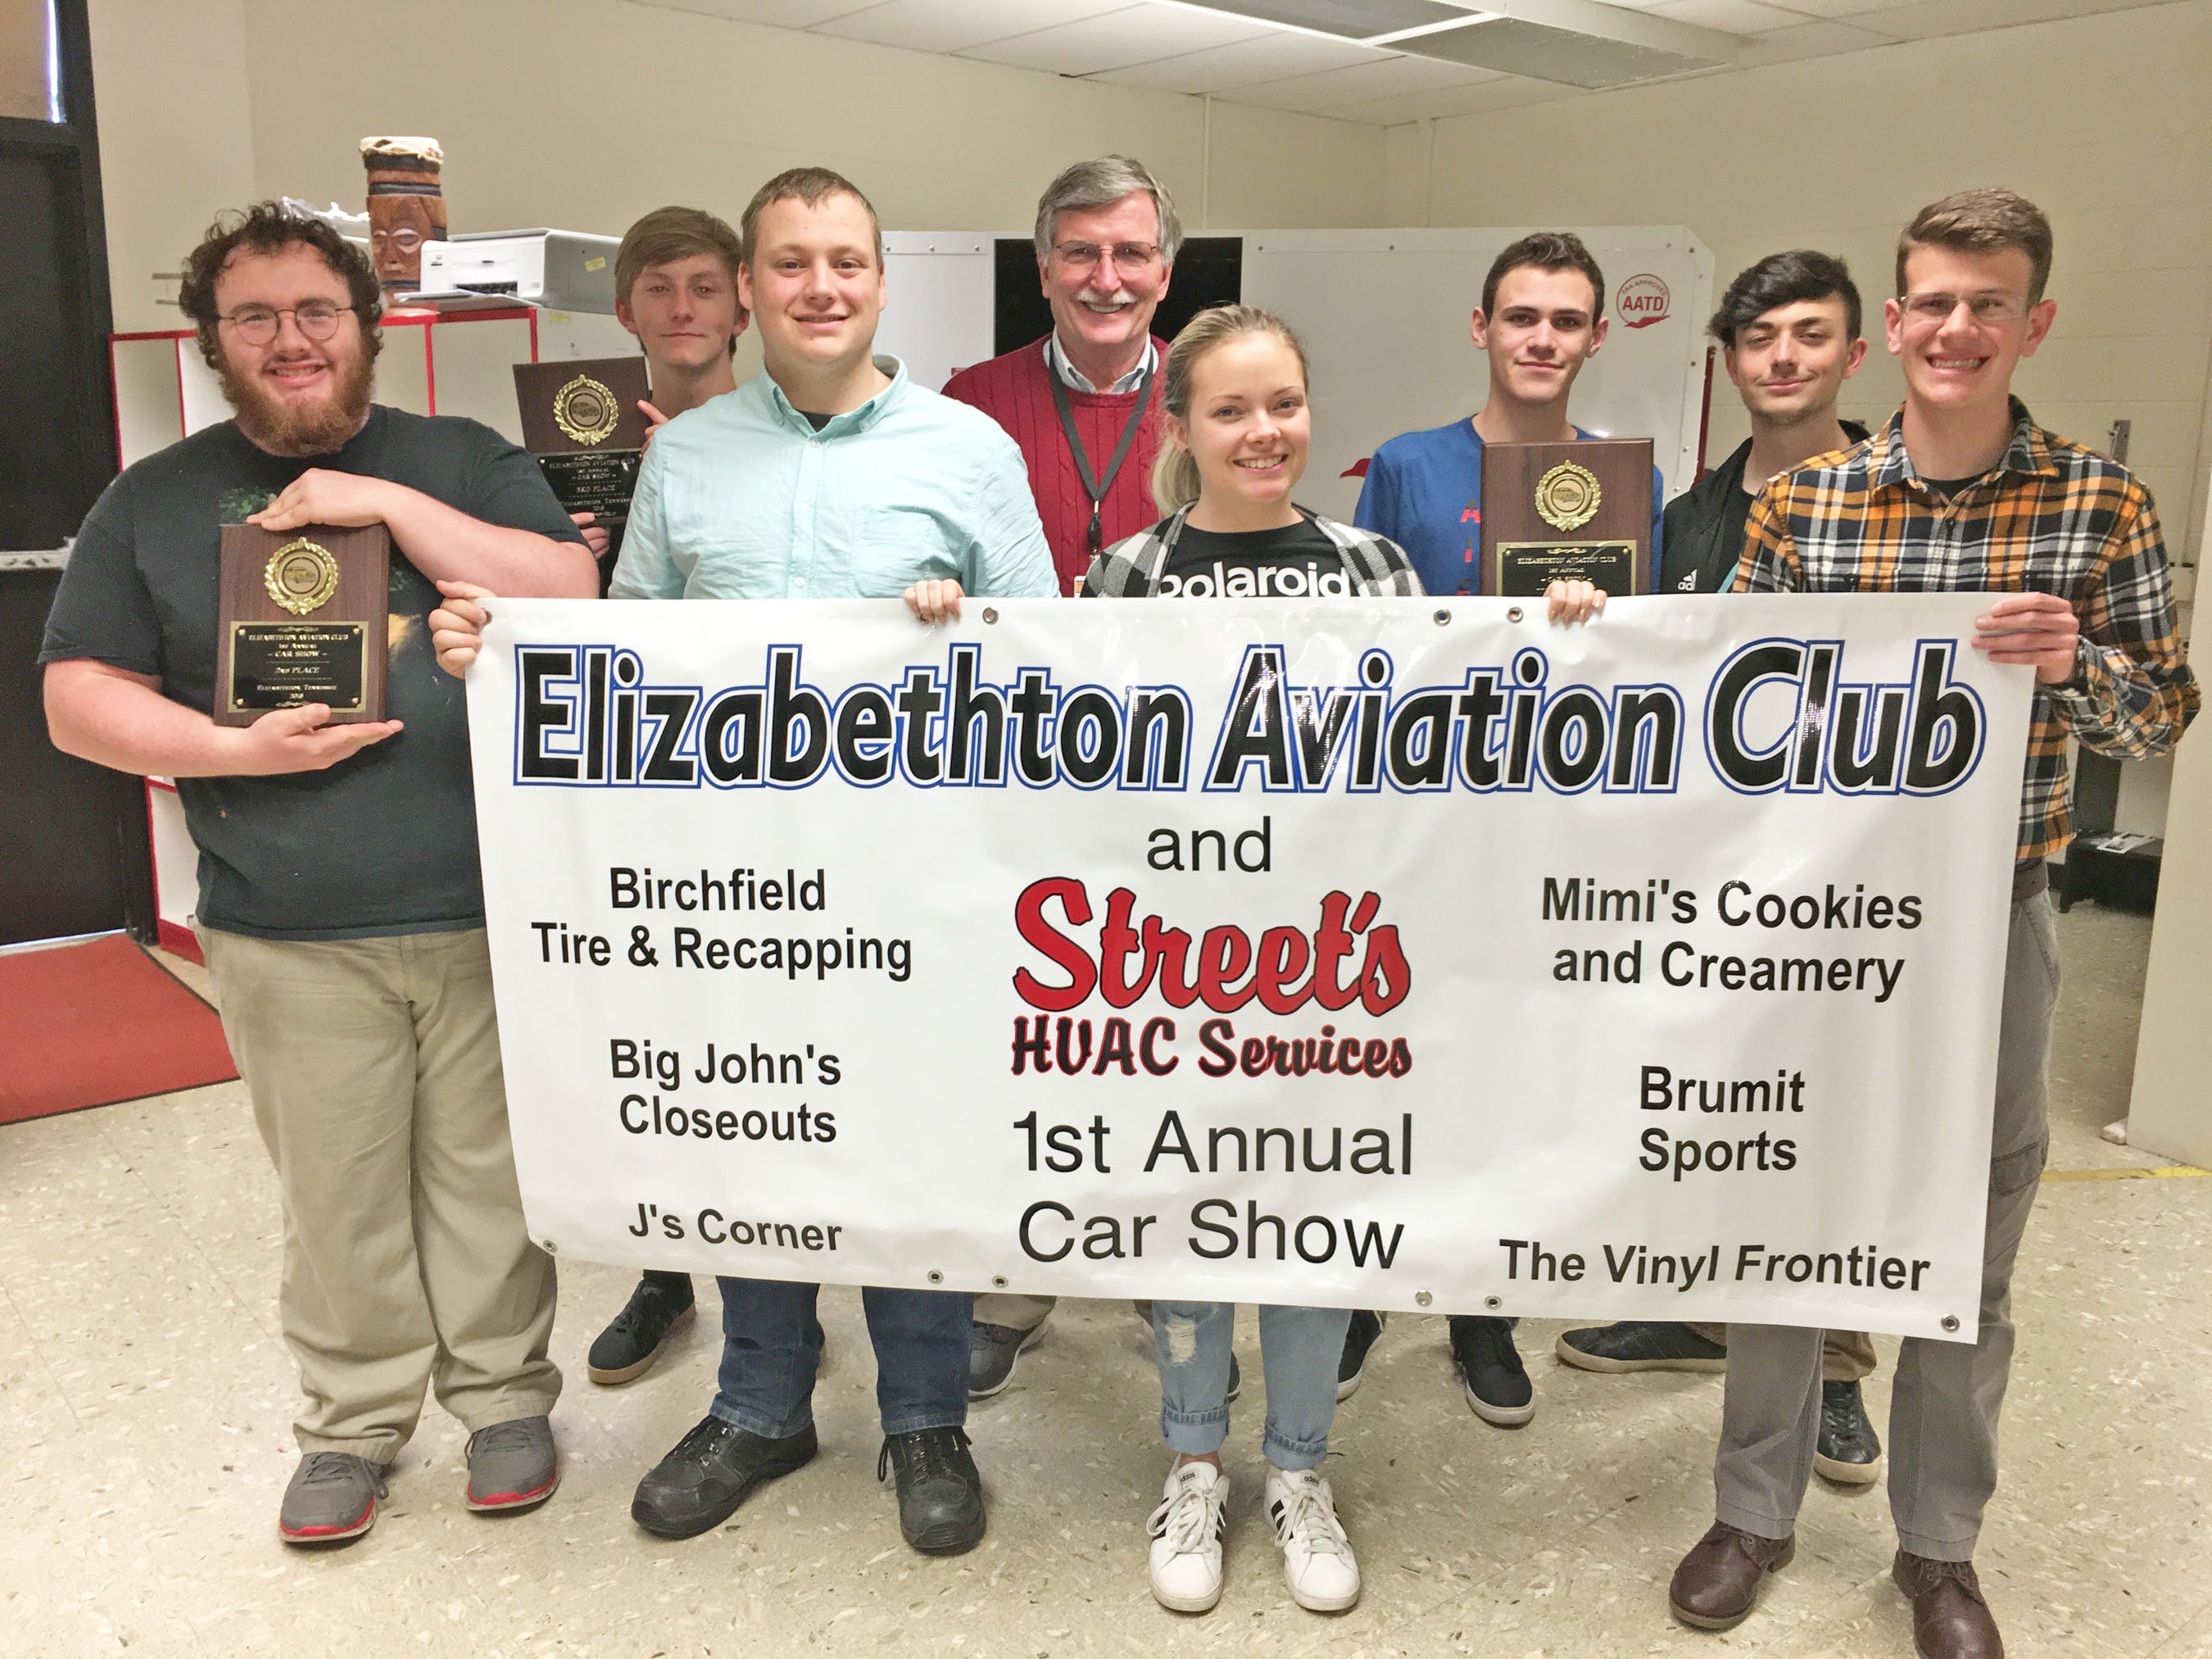 Inagurual Elizabethton Aviation Club Car show set for Saturday www